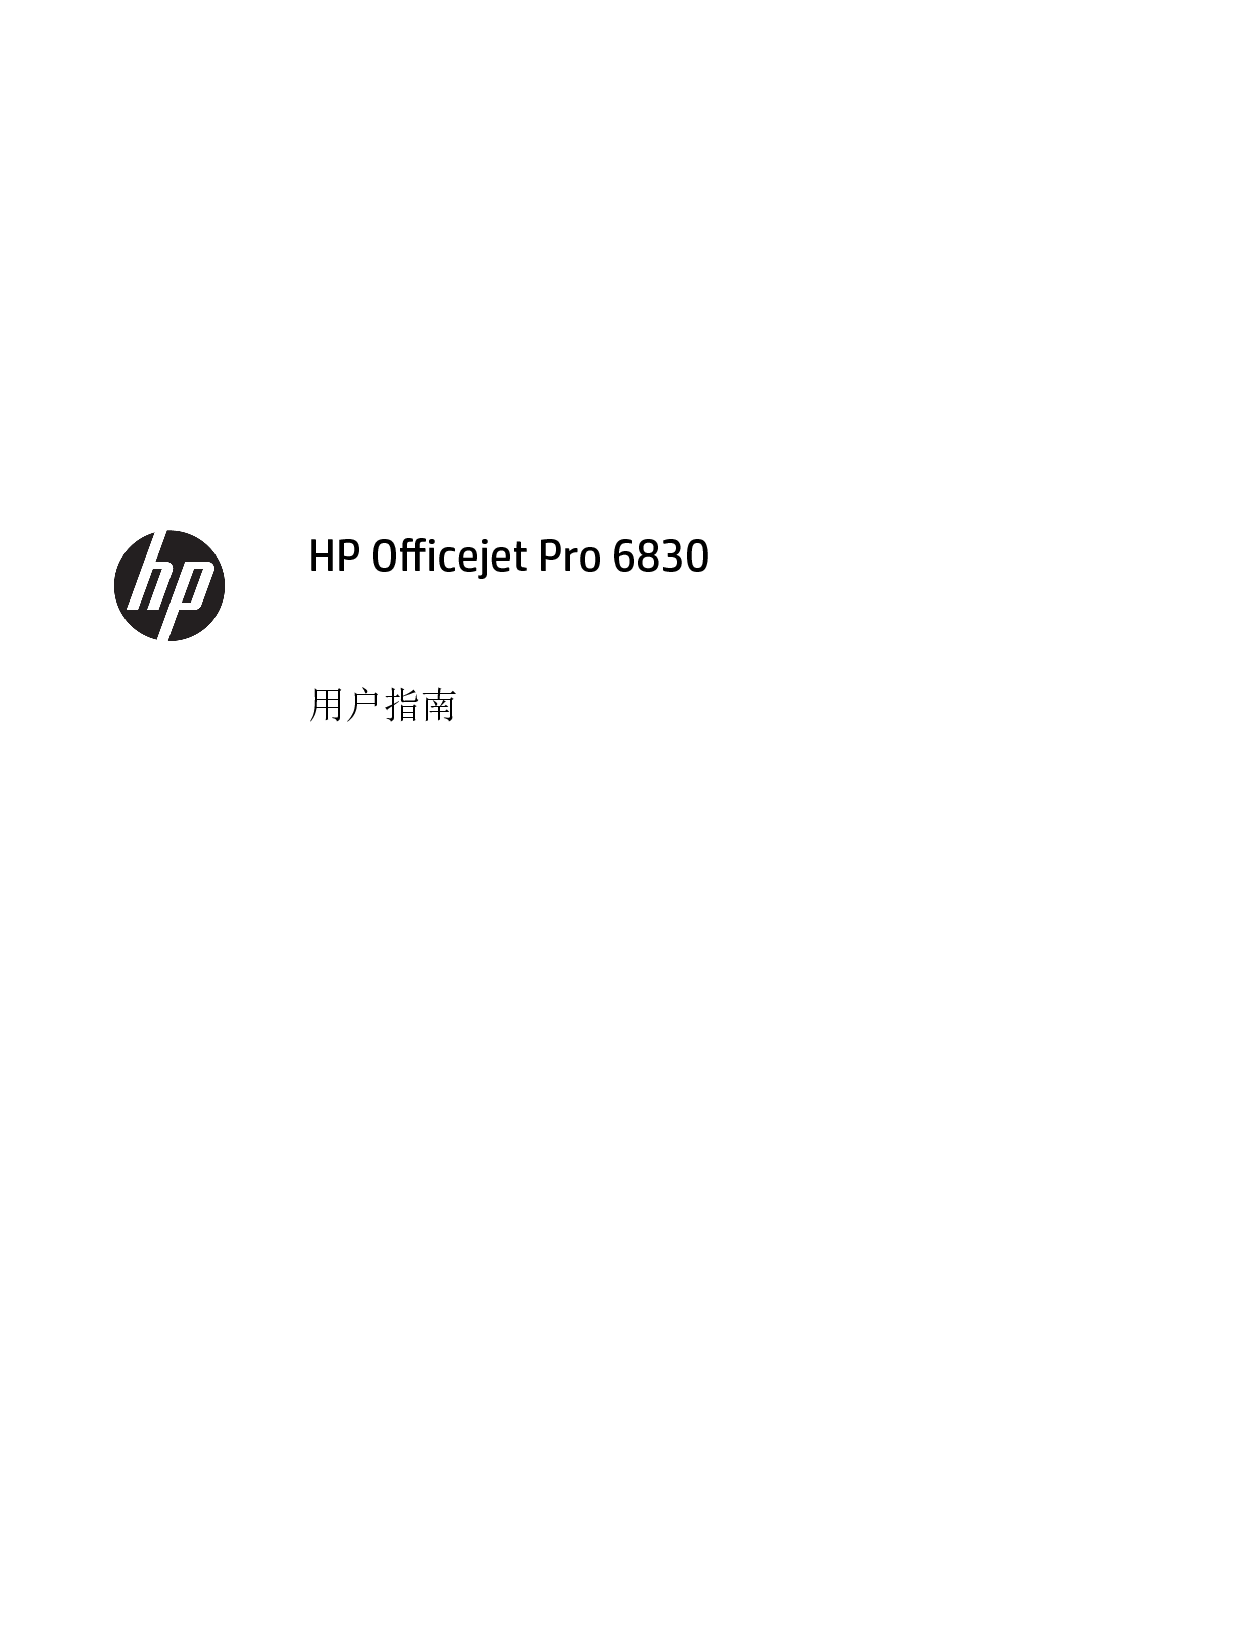 惠普 HP OfficeJet Pro 6830 用户指南 封面